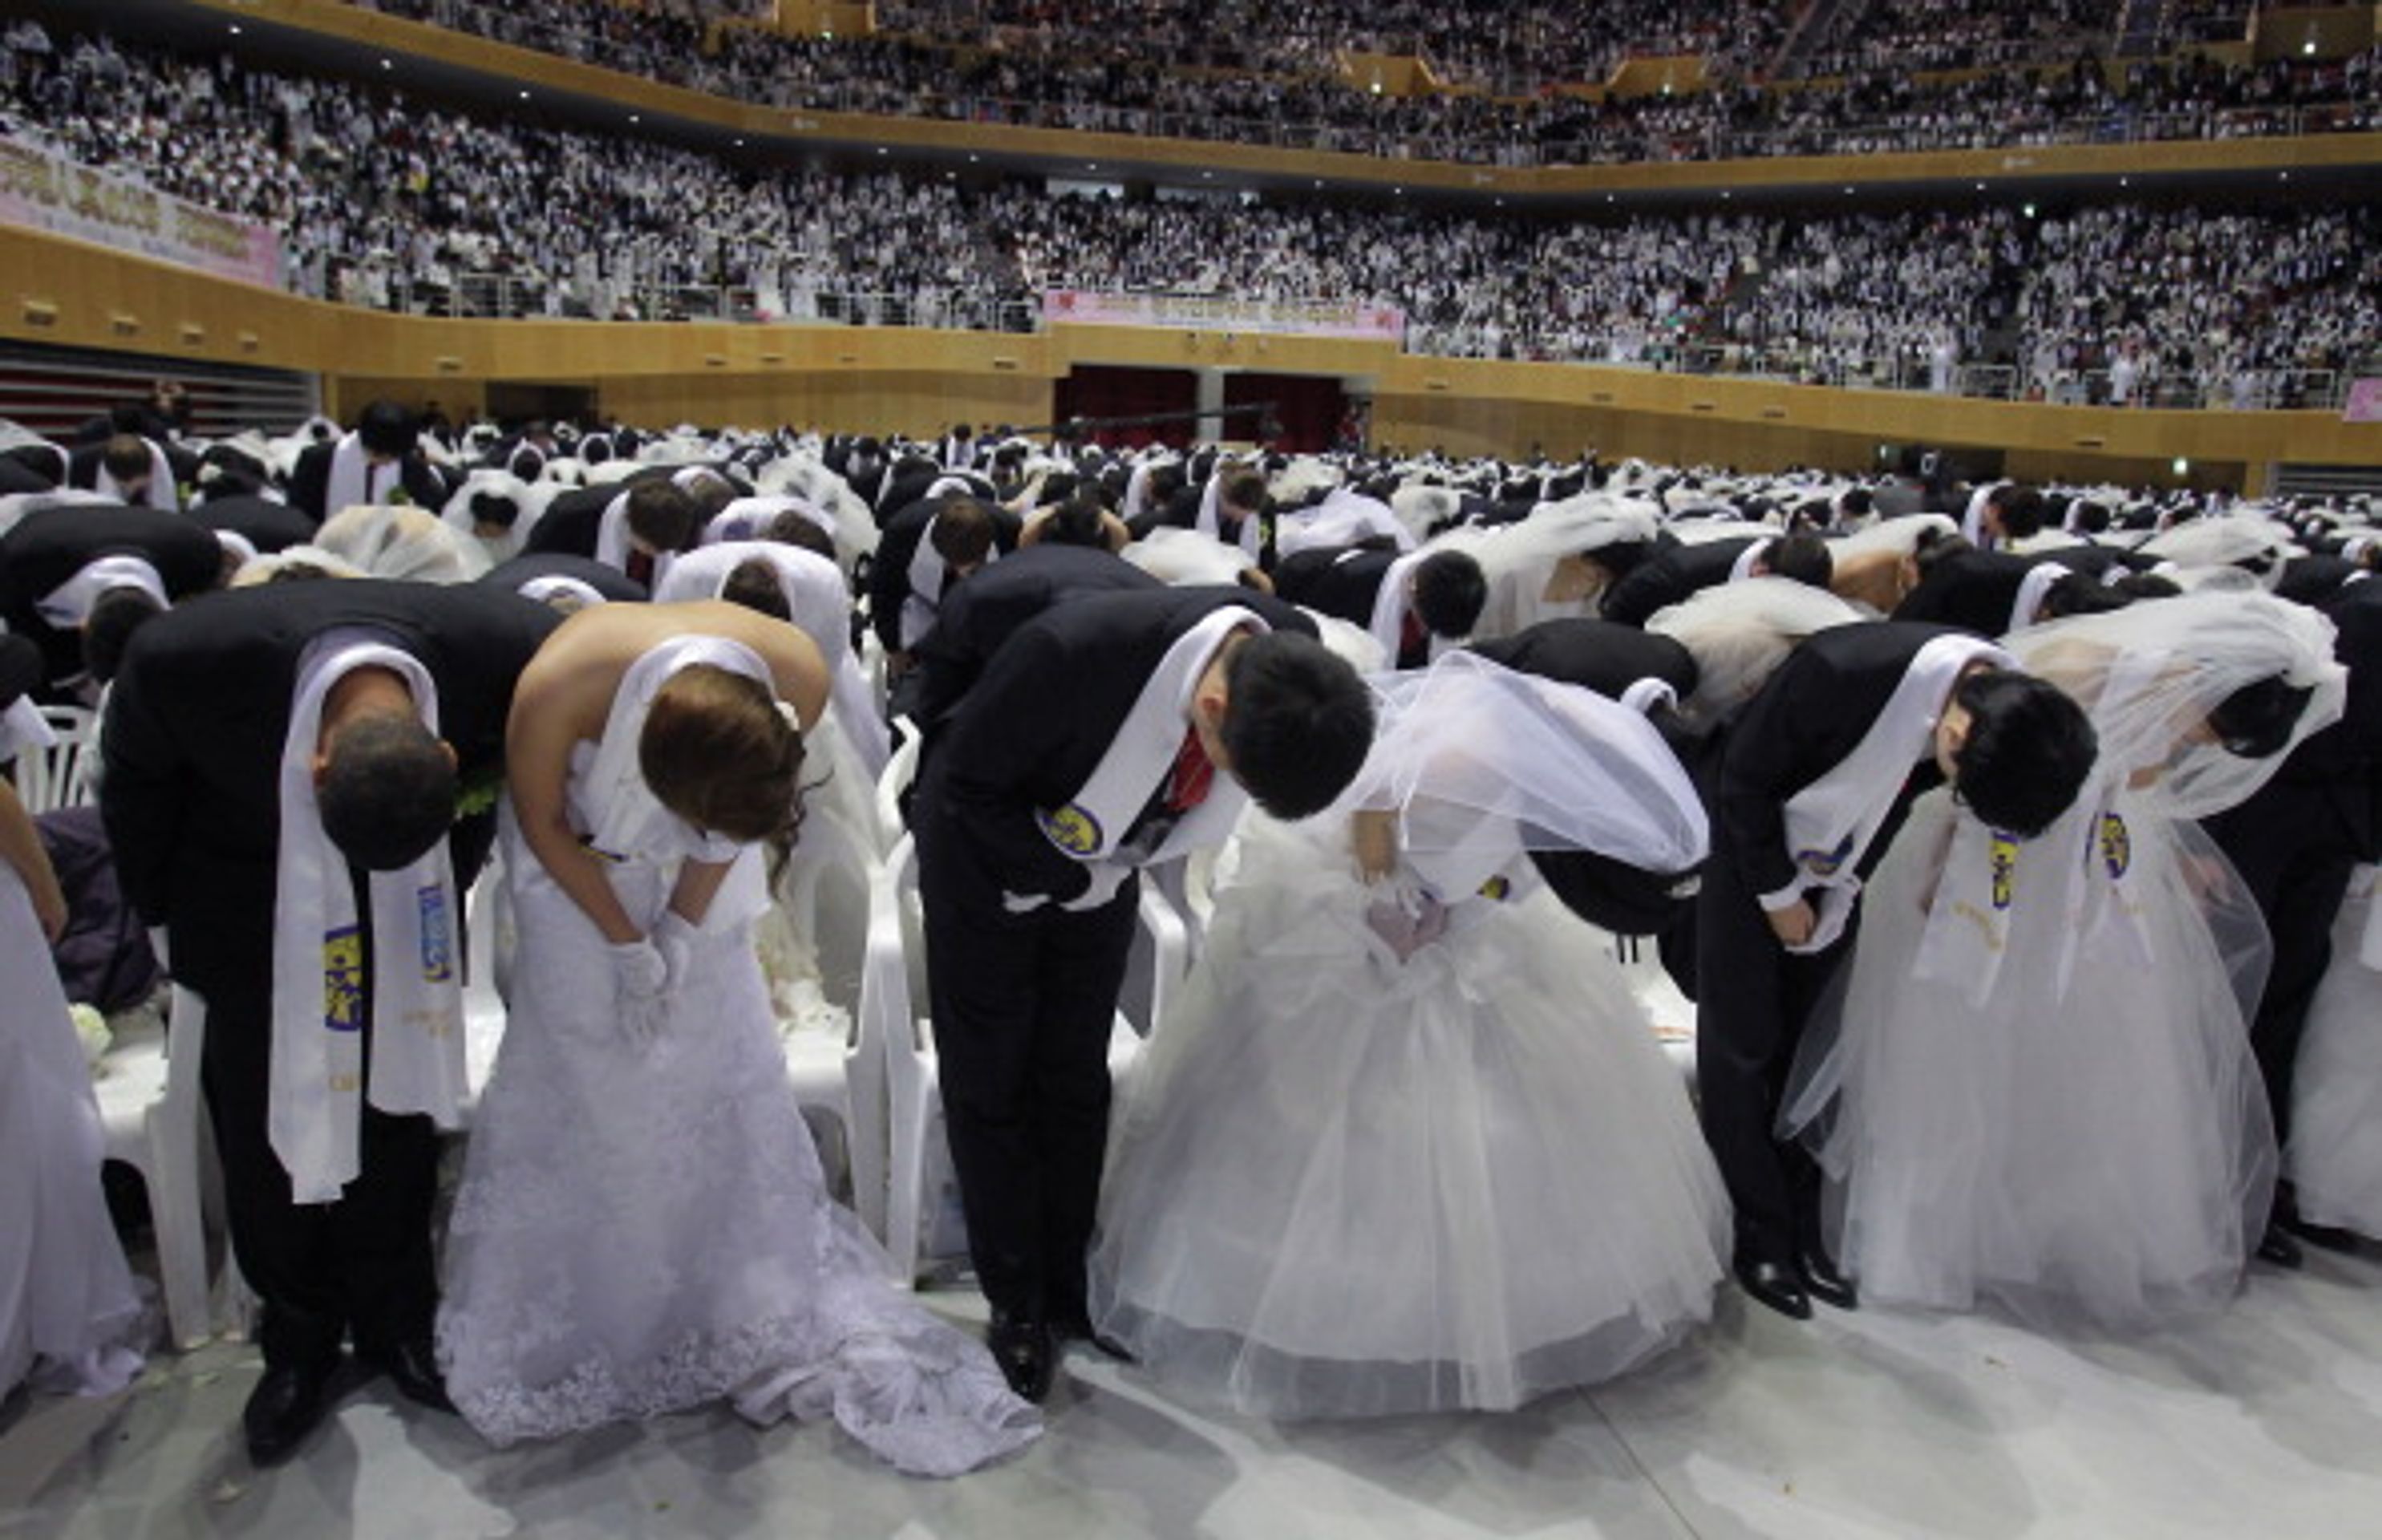 Hromadná svatba v Jižní Koreji - 9 - Svatba ve velkém stylu: Bralo se 3500 párů najednou! (4/12)